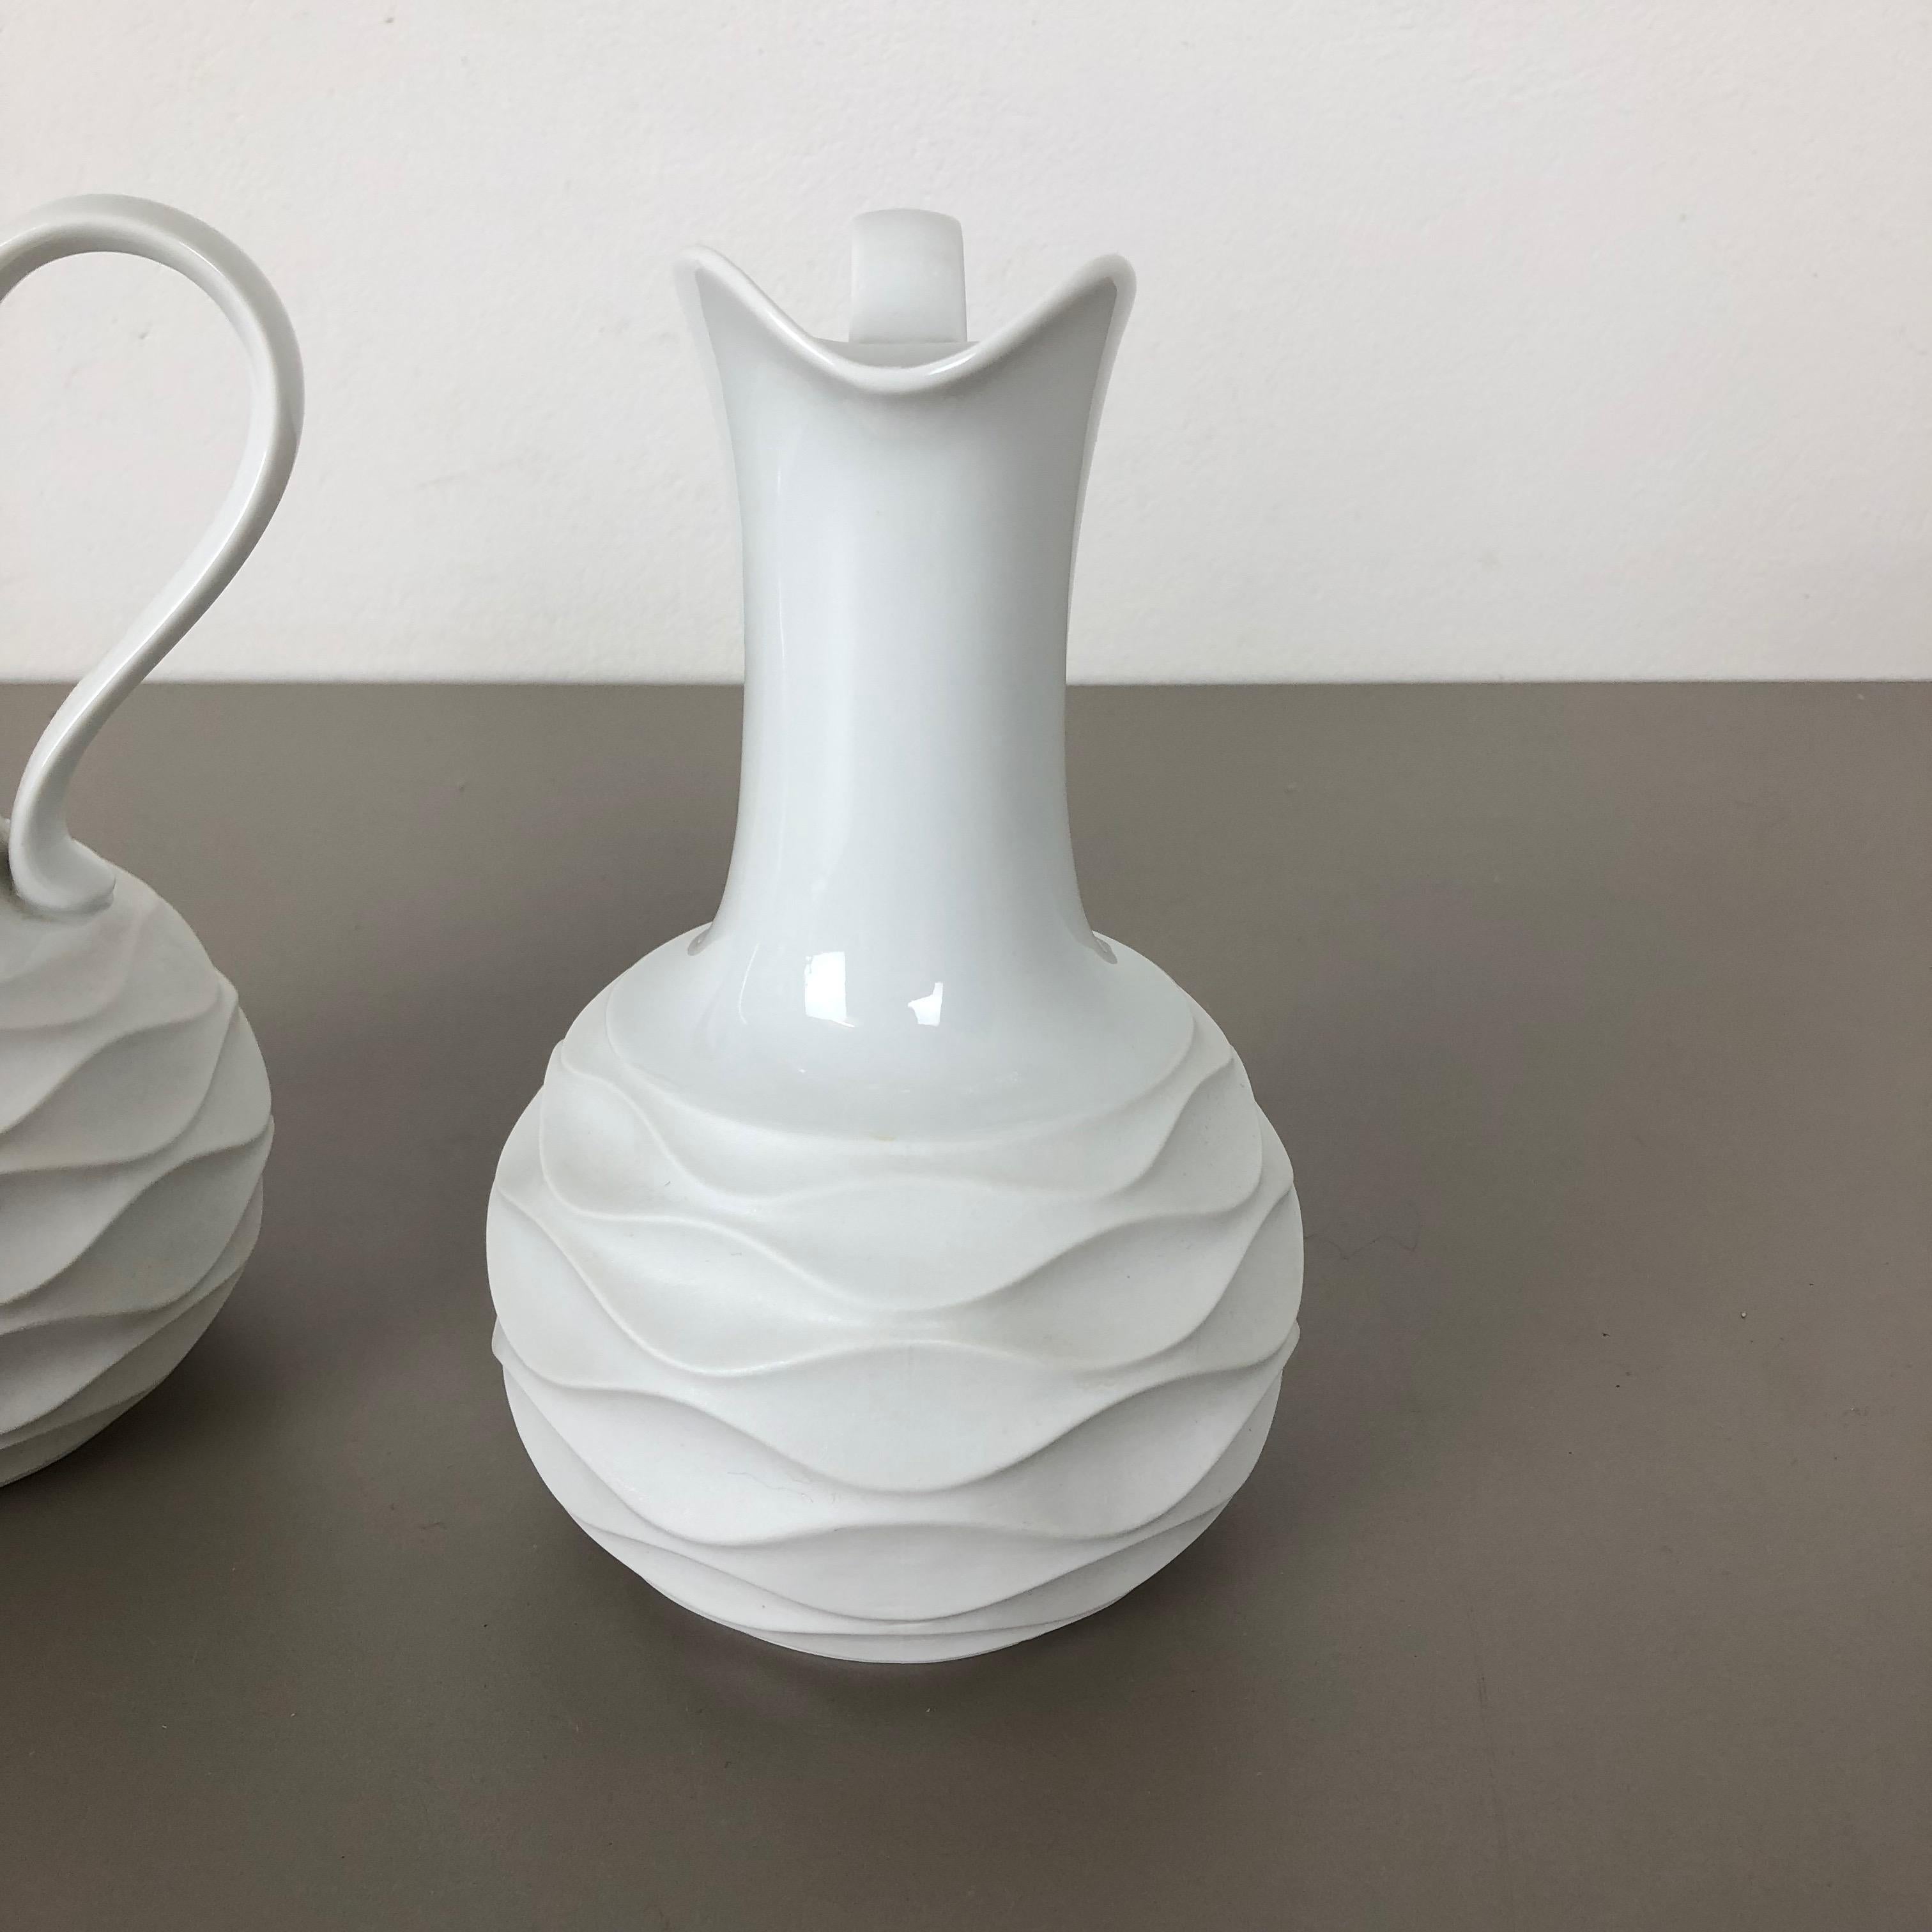 Set of 2 OP Art Biscuit Porcelain Jug Vases by Edelstein Bavaria, Germany, 1970s For Sale 6